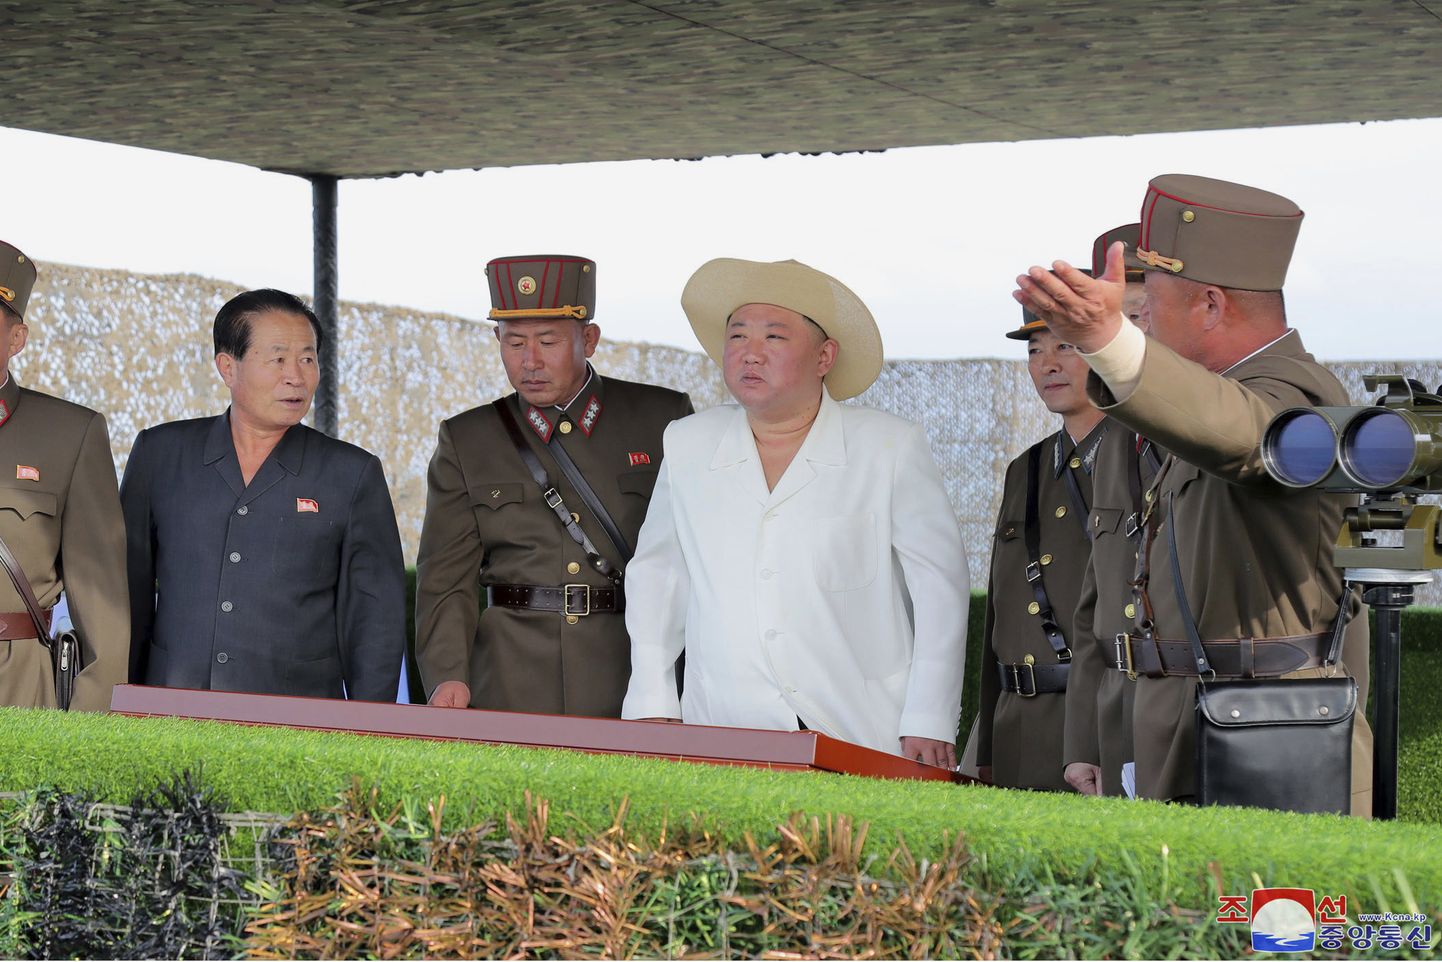 Põhja-Korea liider Kim Jong-un koos kindralitega 6. oktoobril 2022 jälgimas avaldamata paigas raketikatsetust. Teda on näha tavapärase tumeda riietuse asemel heledas ja heleda kaabuga